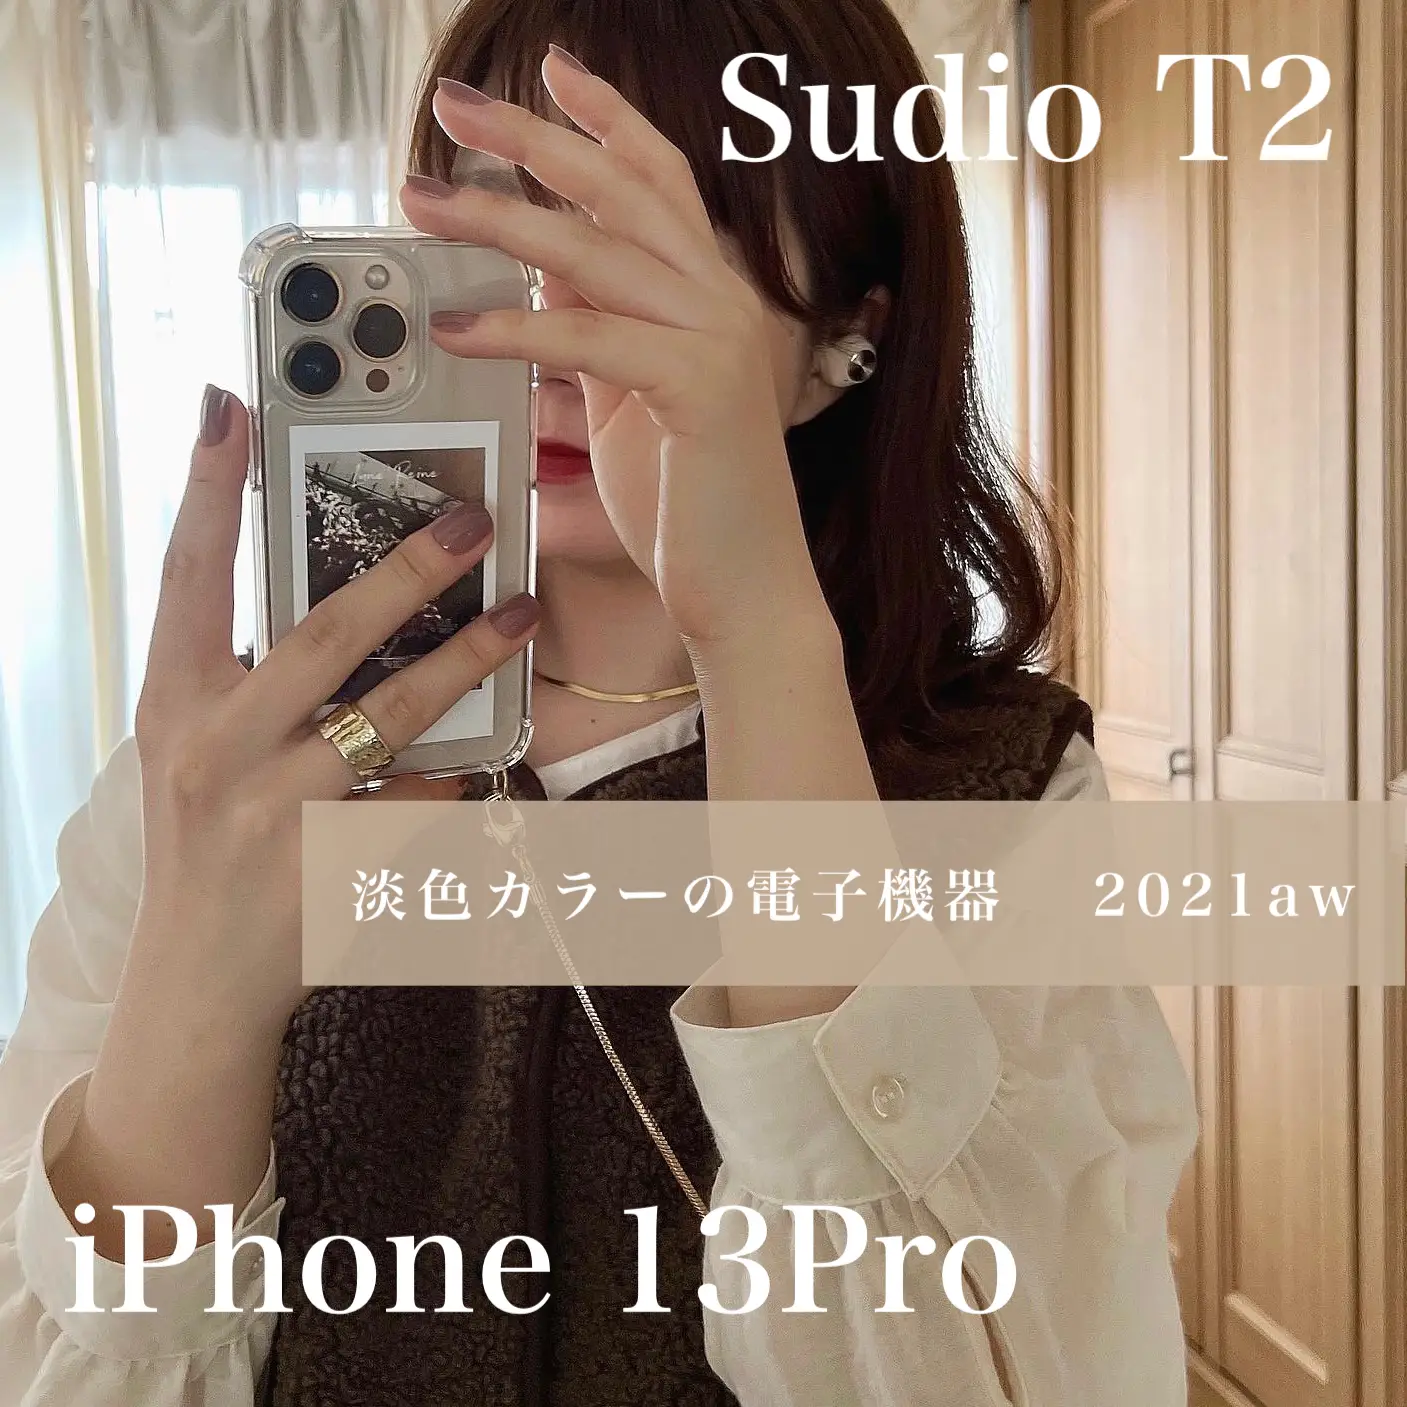 【2021aw】淡色カラーの電子機器❕iPhone 13Pro /  Sudio T2の画像 (2枚目)